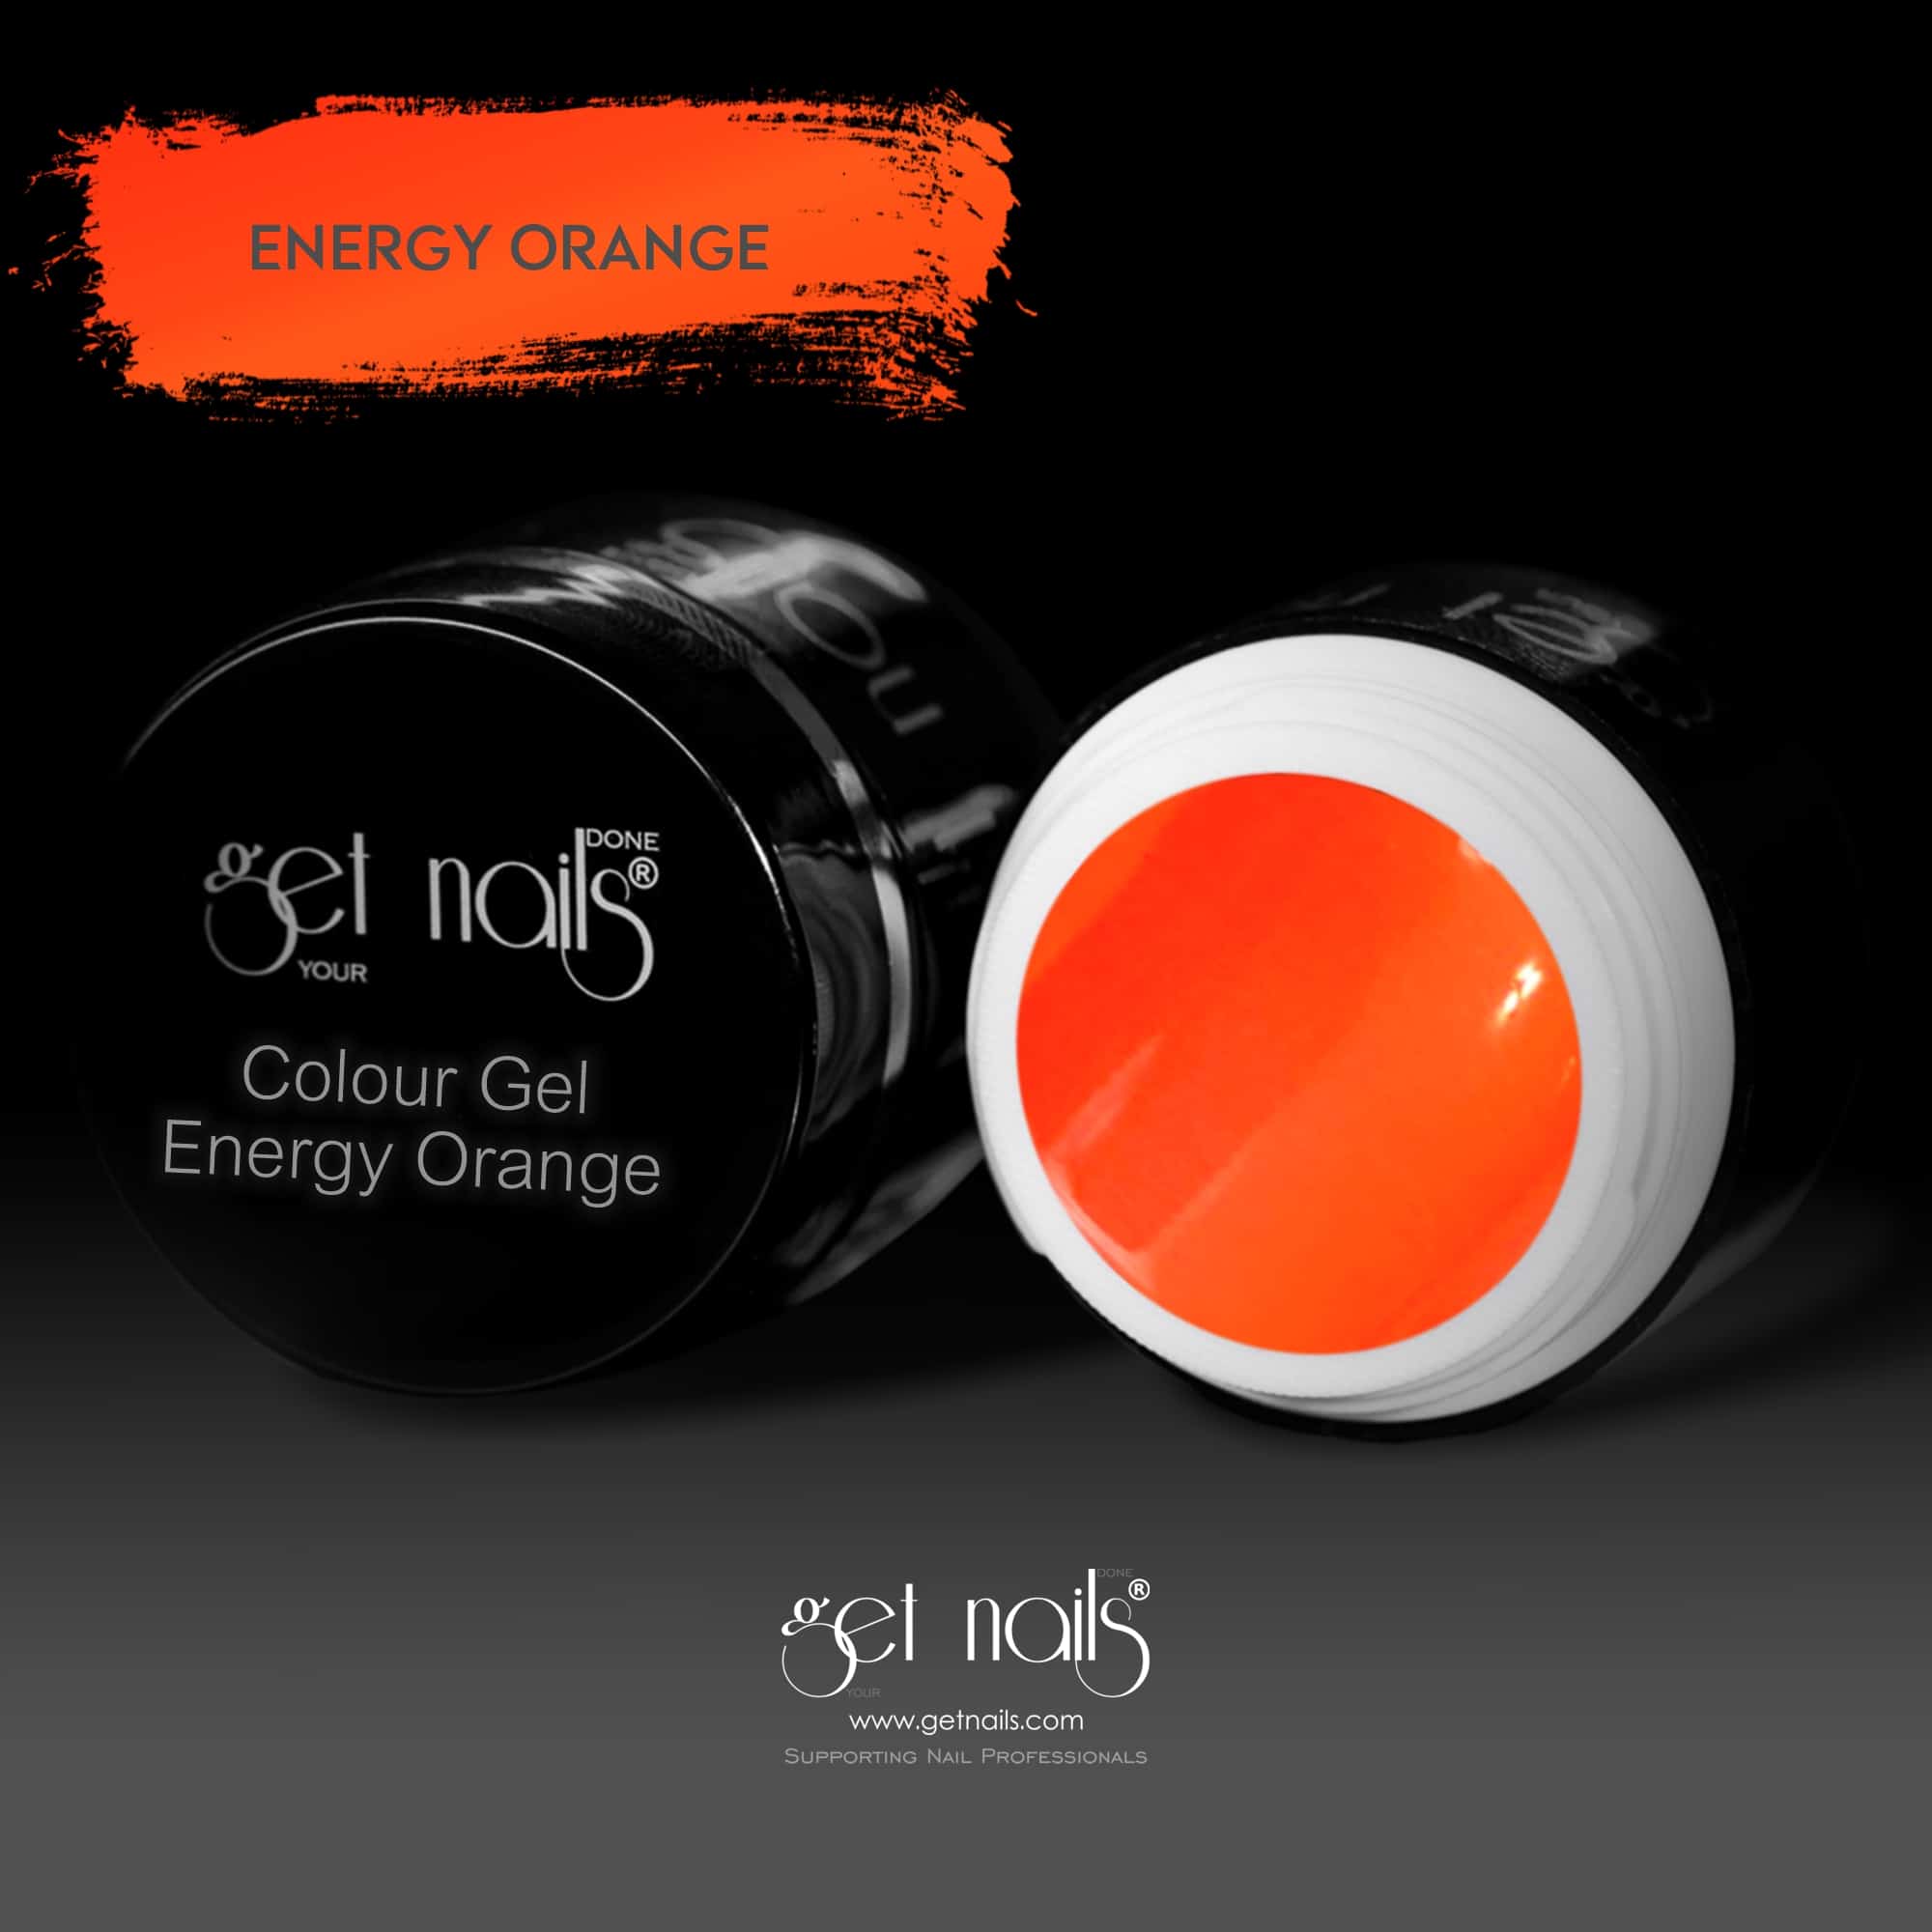 Get Nails Austria - Colour Gel Energy Orange 5g